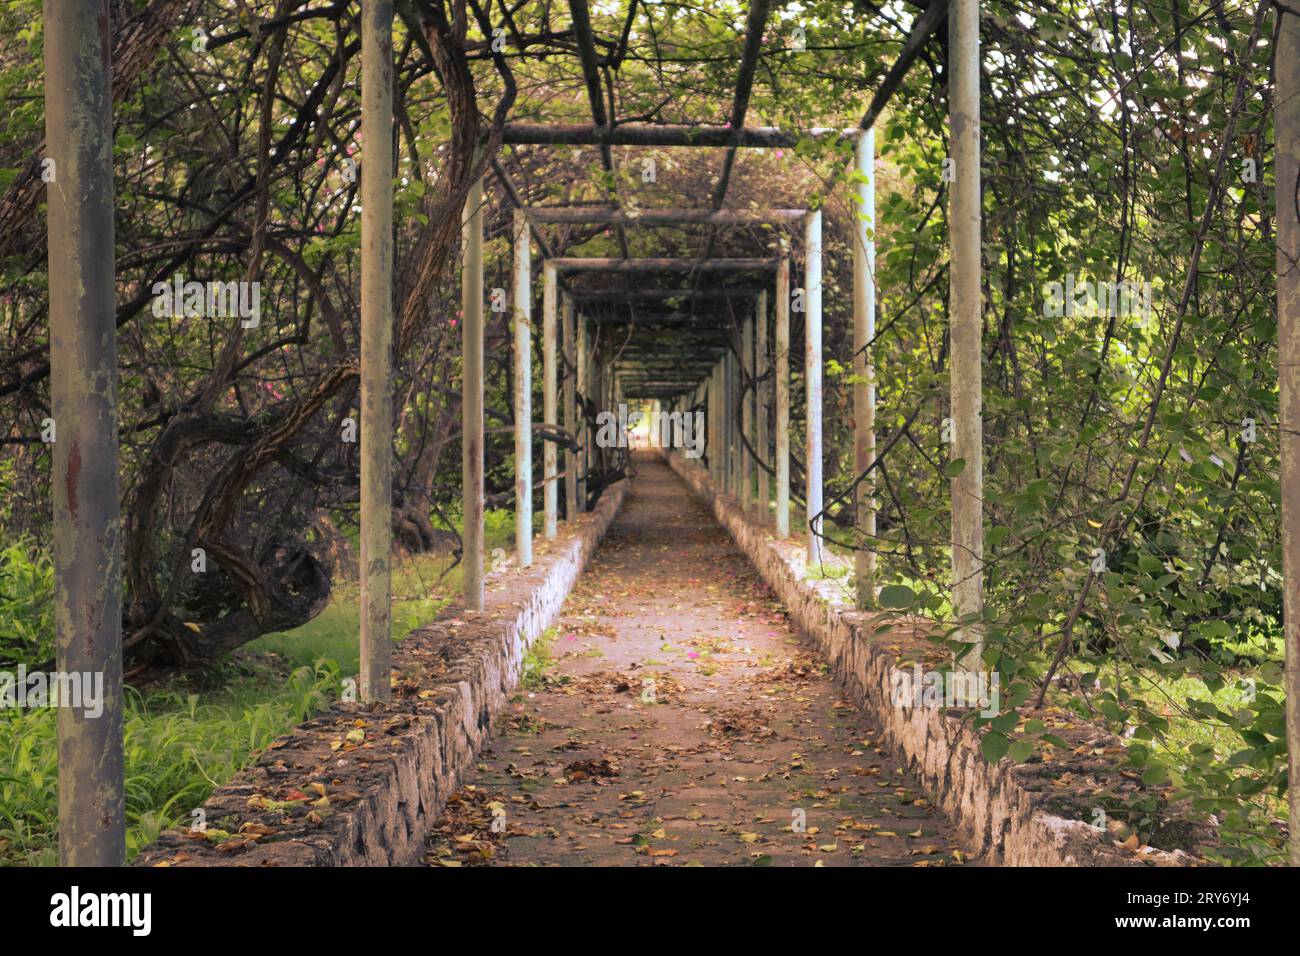 Un sentiero giardino adornato da viti a cascata e foglie lussureggianti, che vi invita in un viaggio di serenità e meraviglie botaniche. Foto Stock